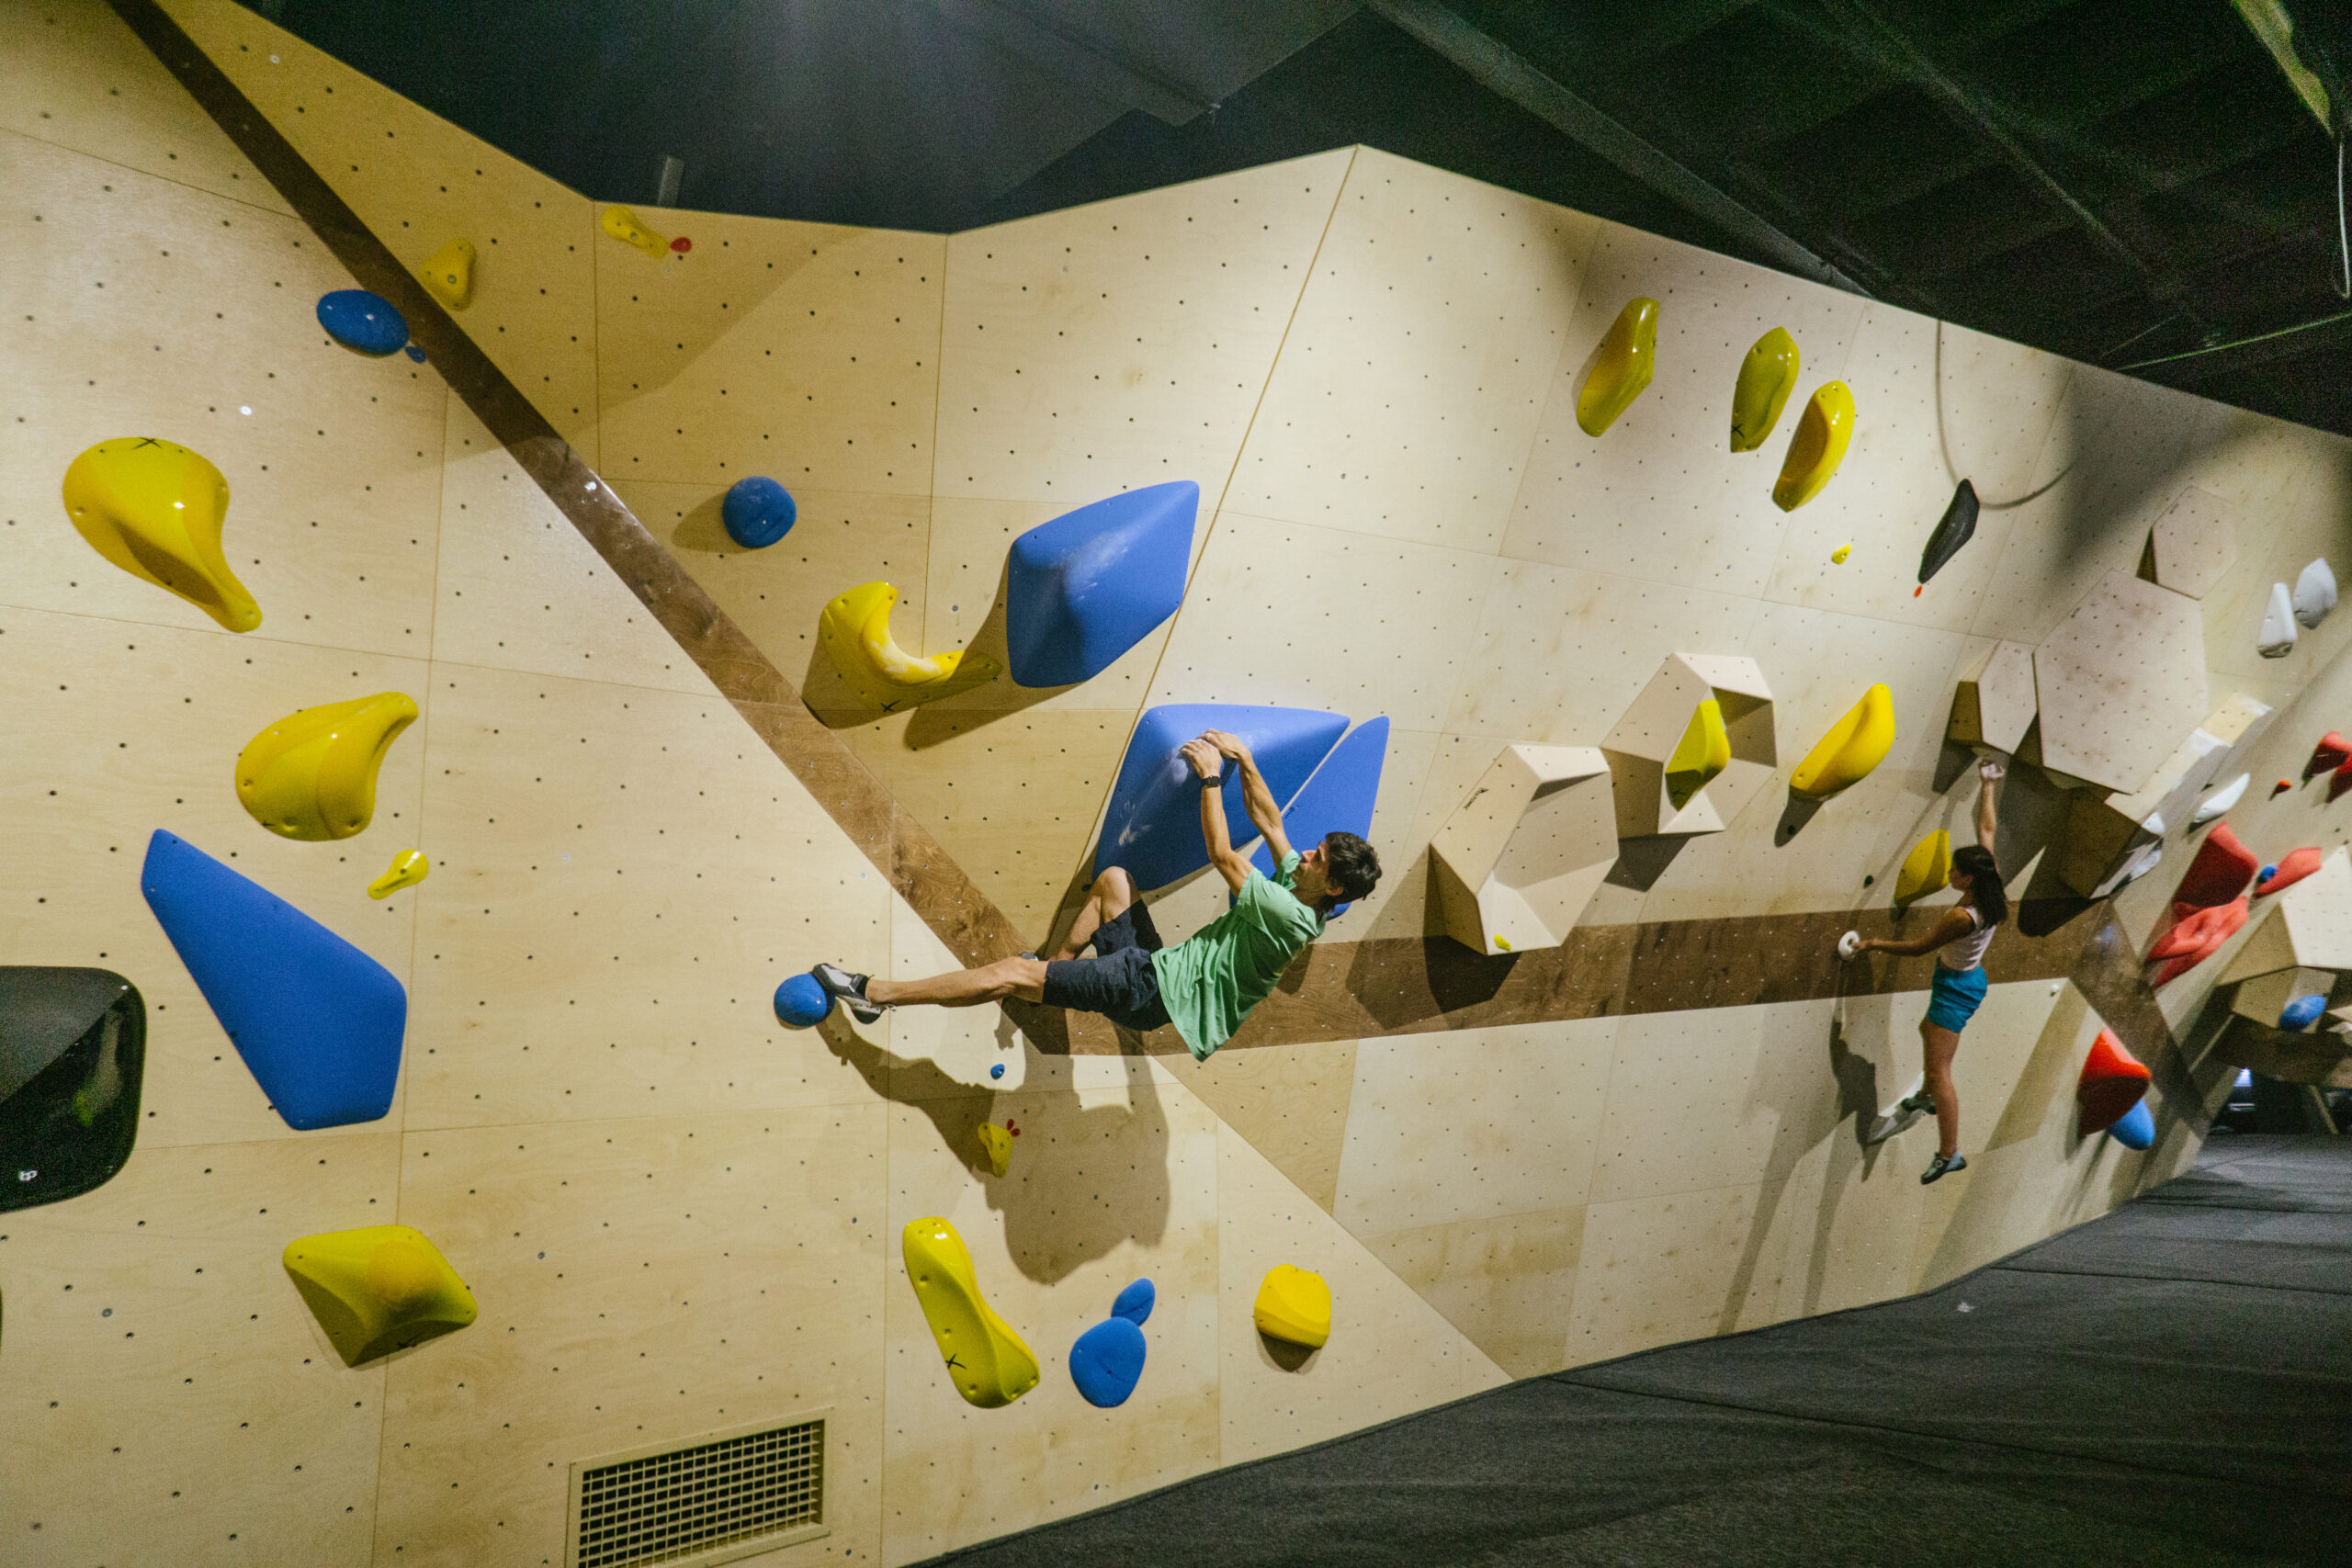 Instalaciones centro de escalada Madrid Legazpi Climbing Gym